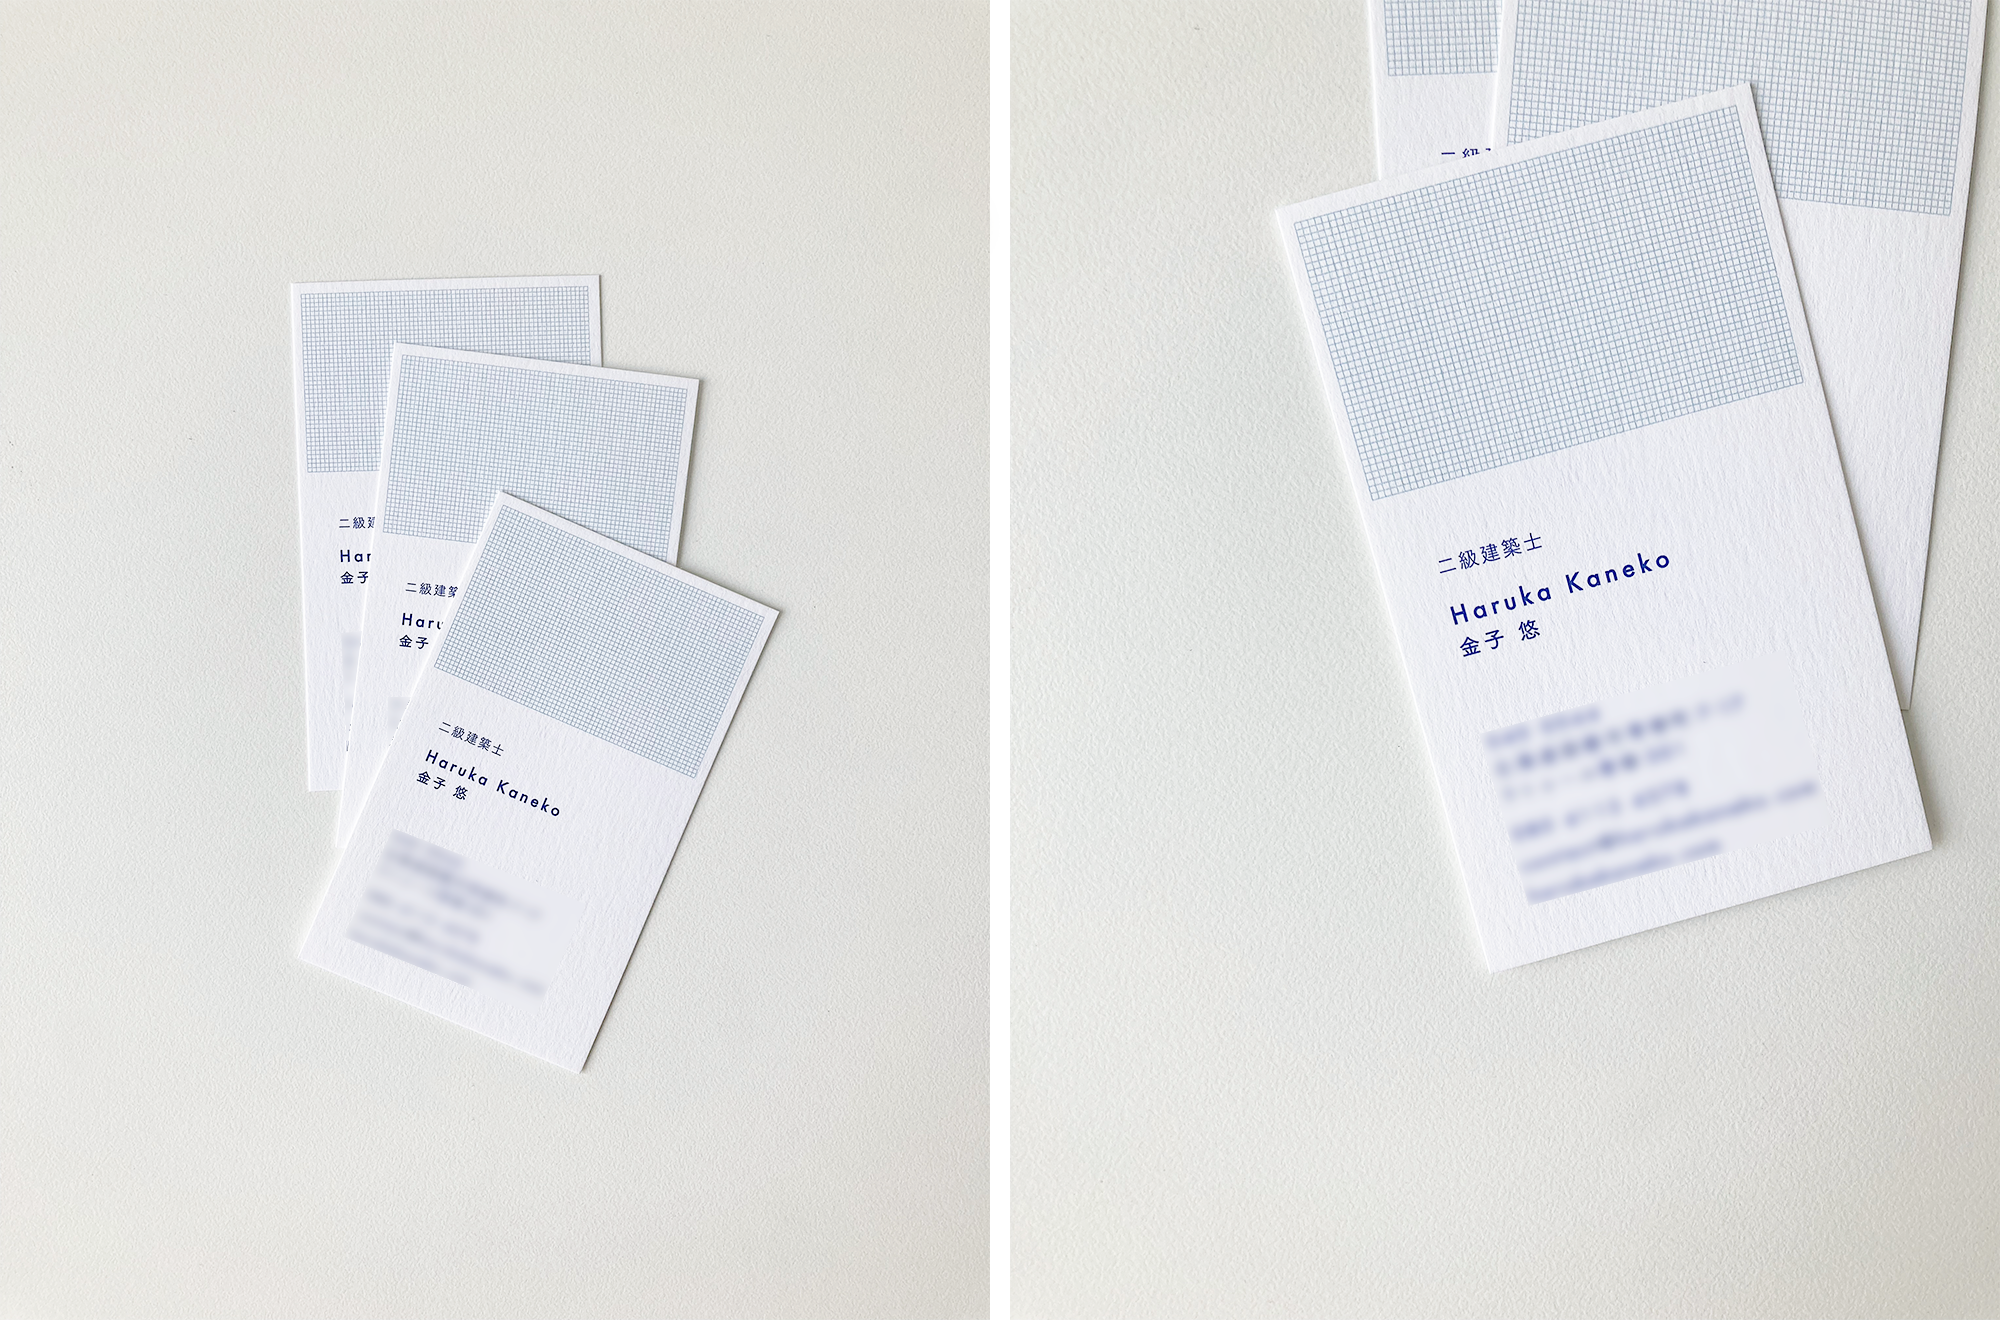 建築士さまの名刺デザイン / Business card design